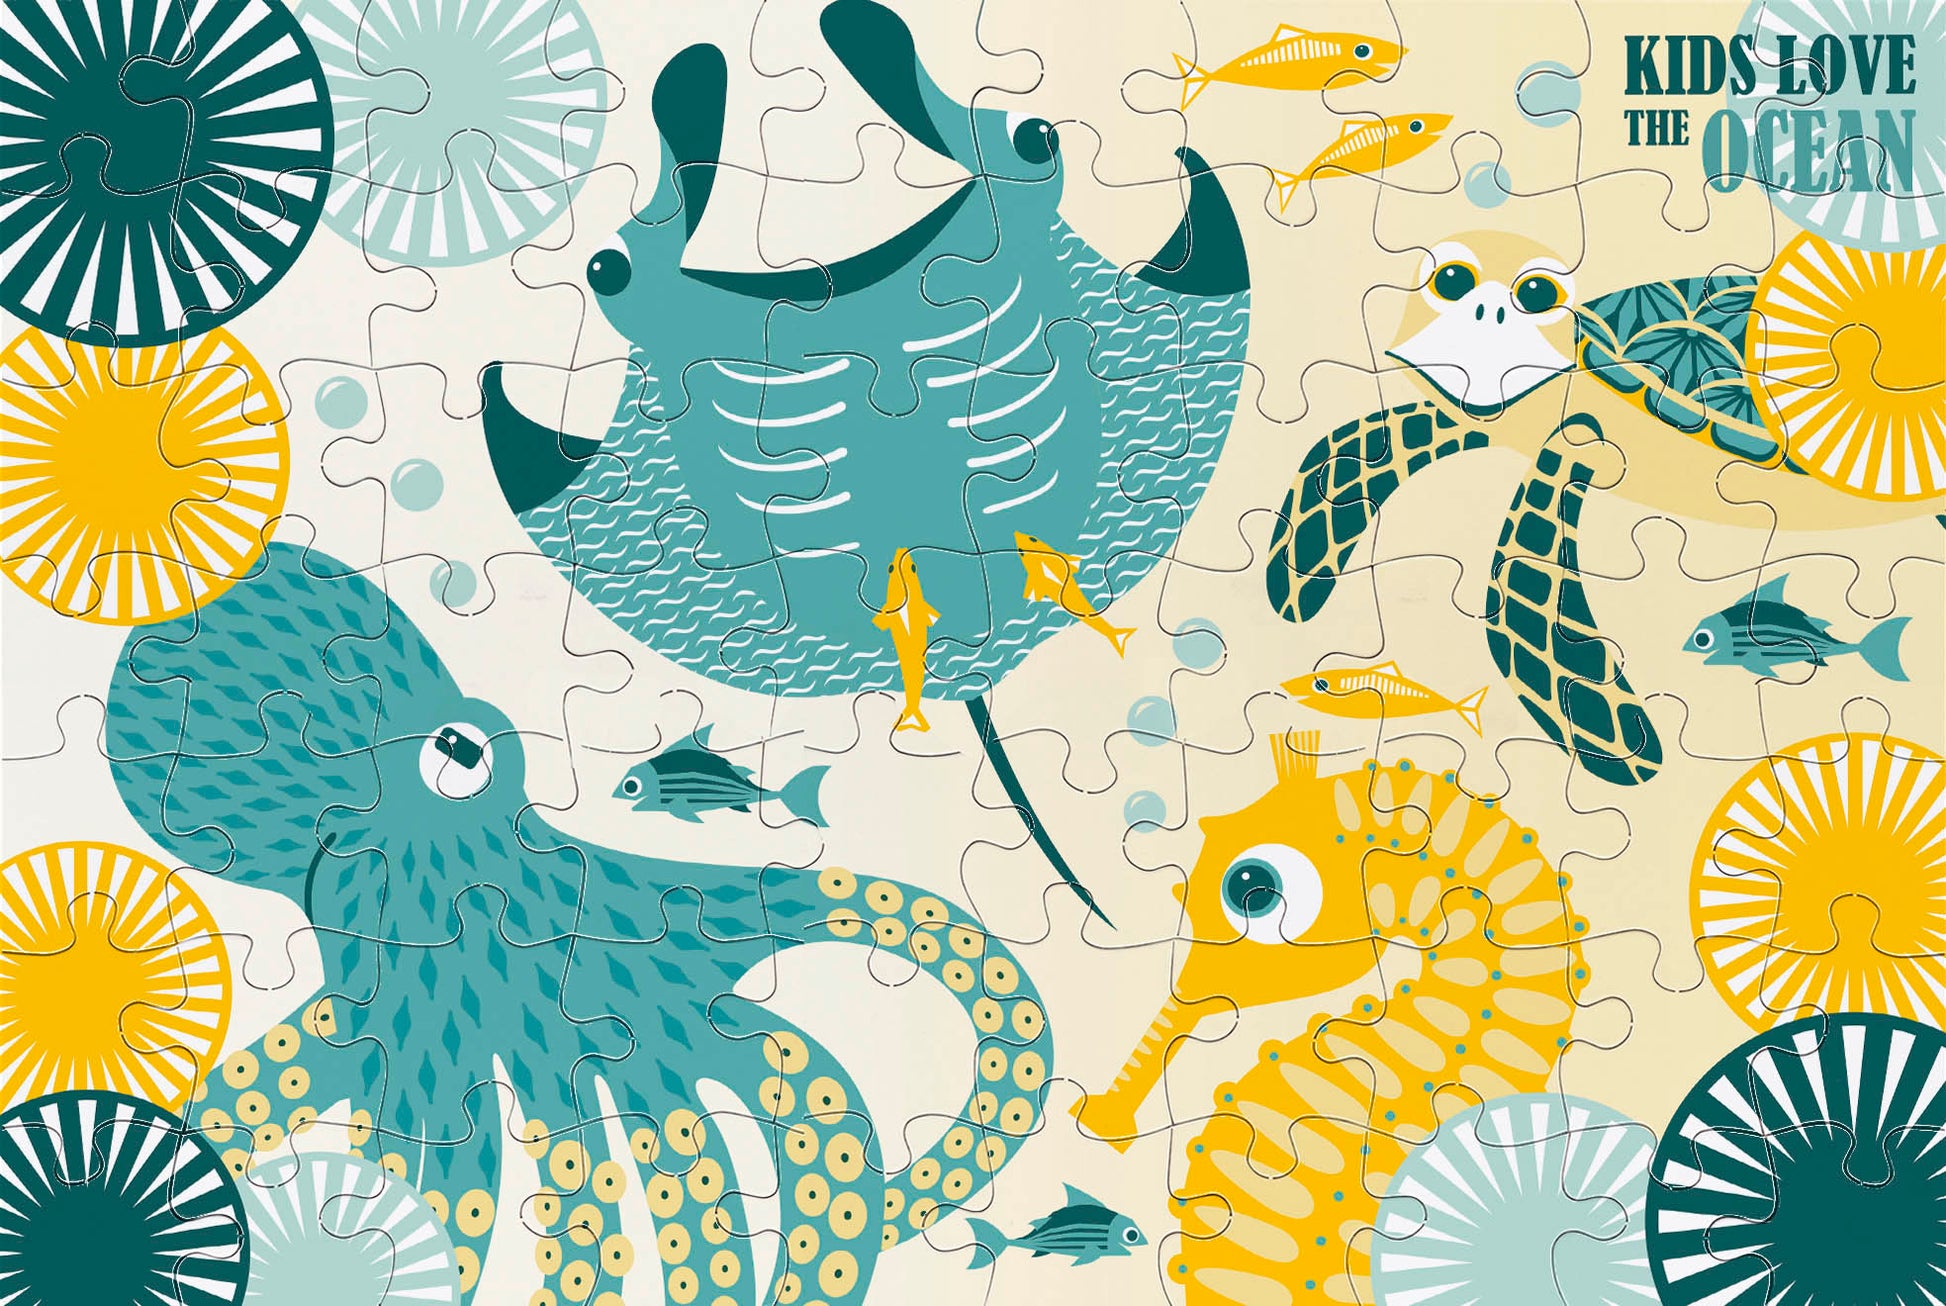 Puzzle 70 pièces OCEANS (dès 5 ans) – Fishishop